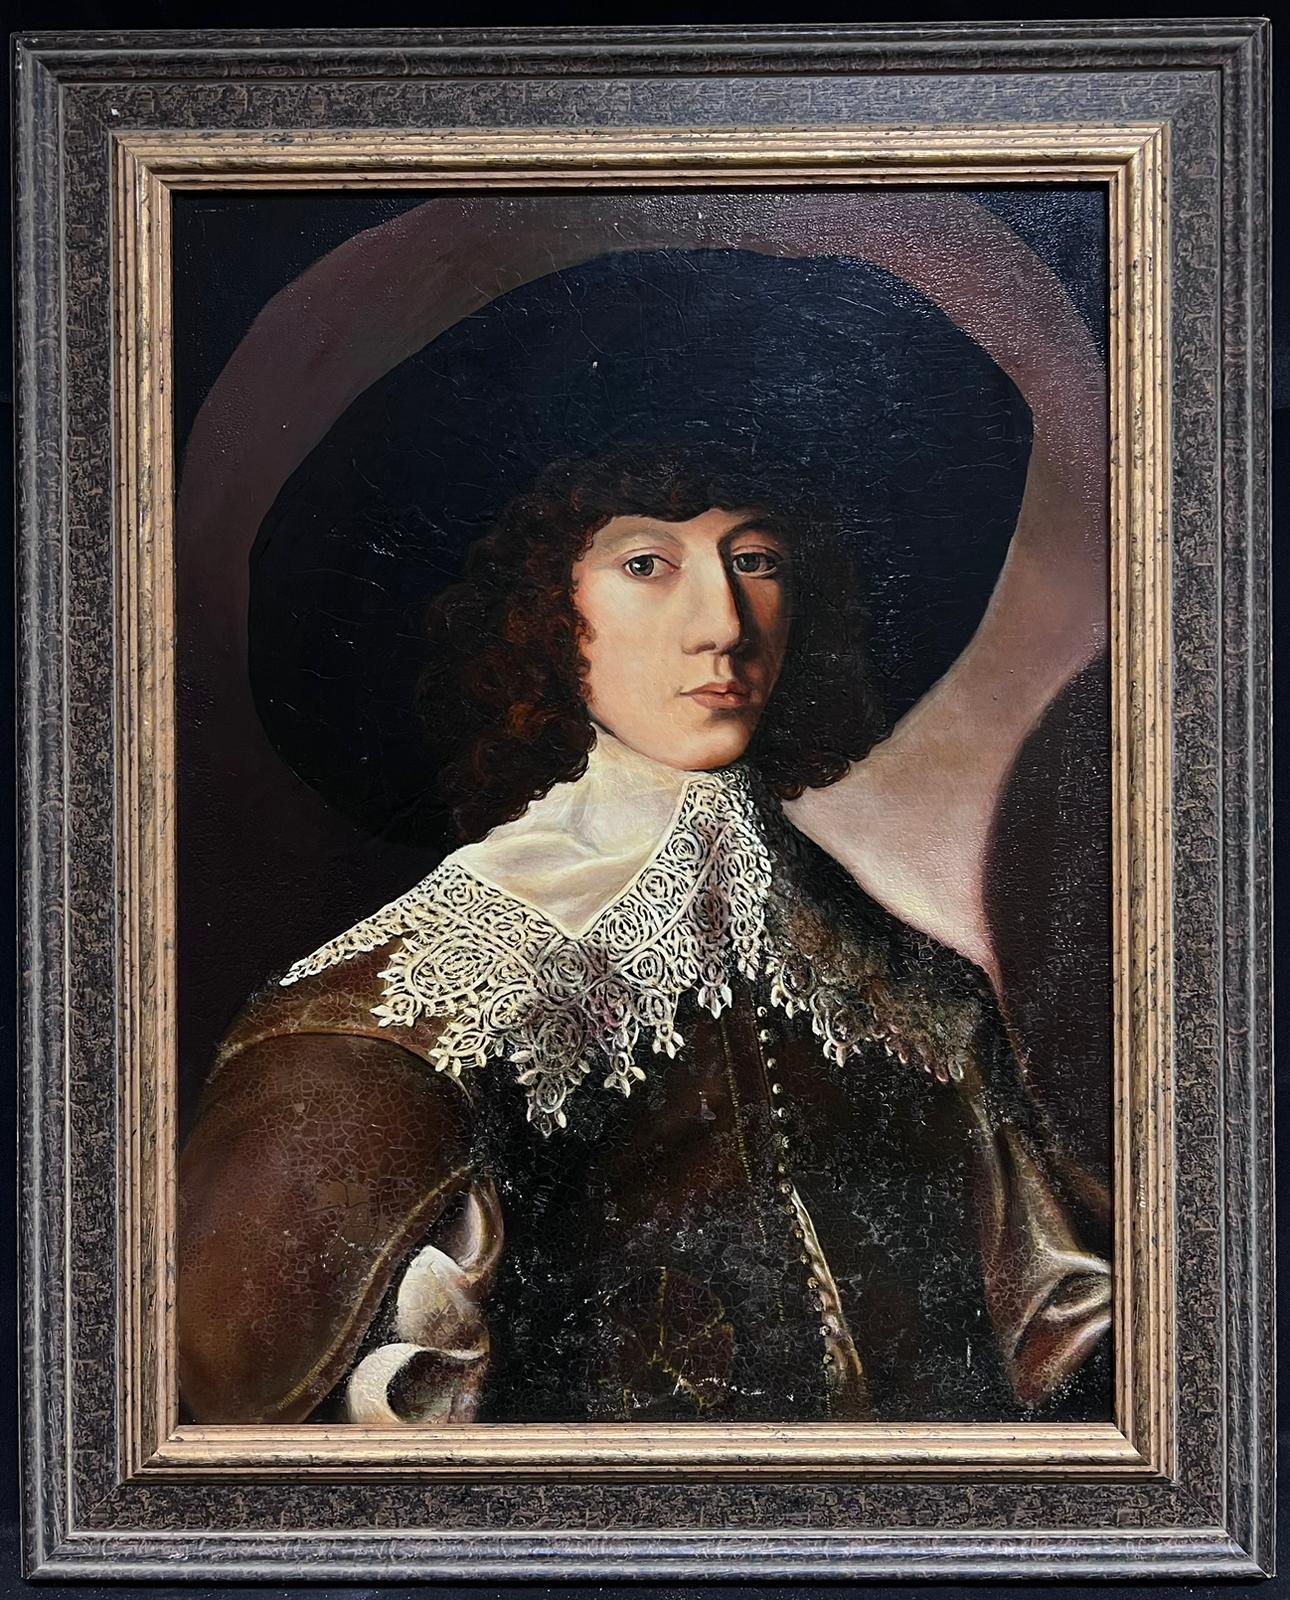 Feines Ölgemälde, Porträt eines französischen aristokratischen Gentleman aus dem 17. Jahrhundert   – Painting von French School